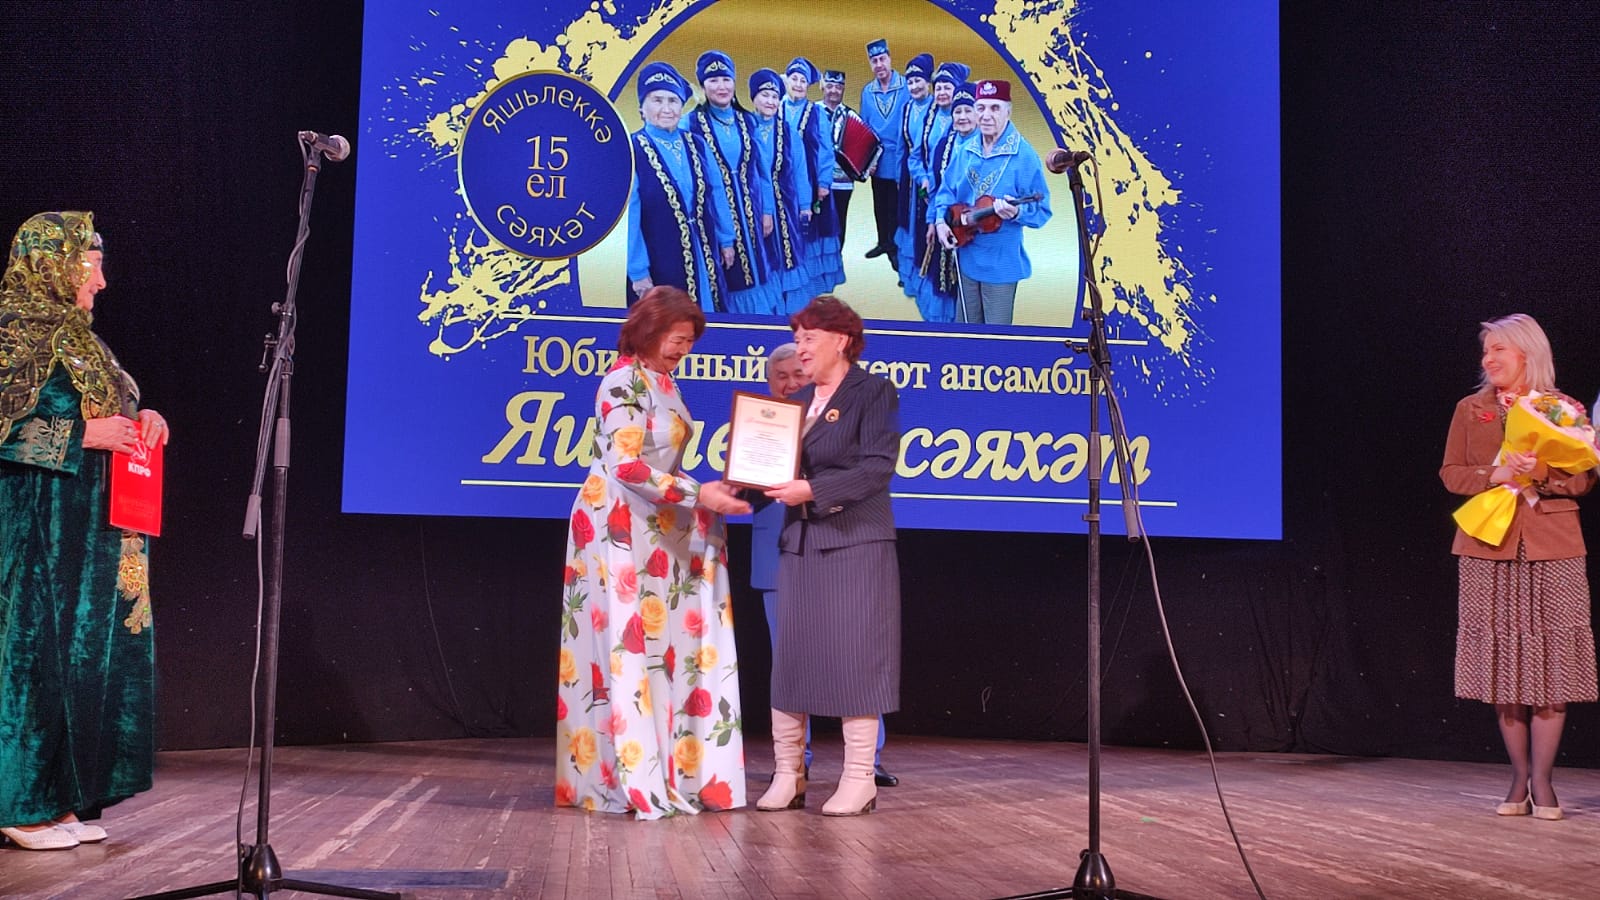 Тамара Казанцева поздравила ансамбль «Путешествие в молодость» с 15-летием юбилеем